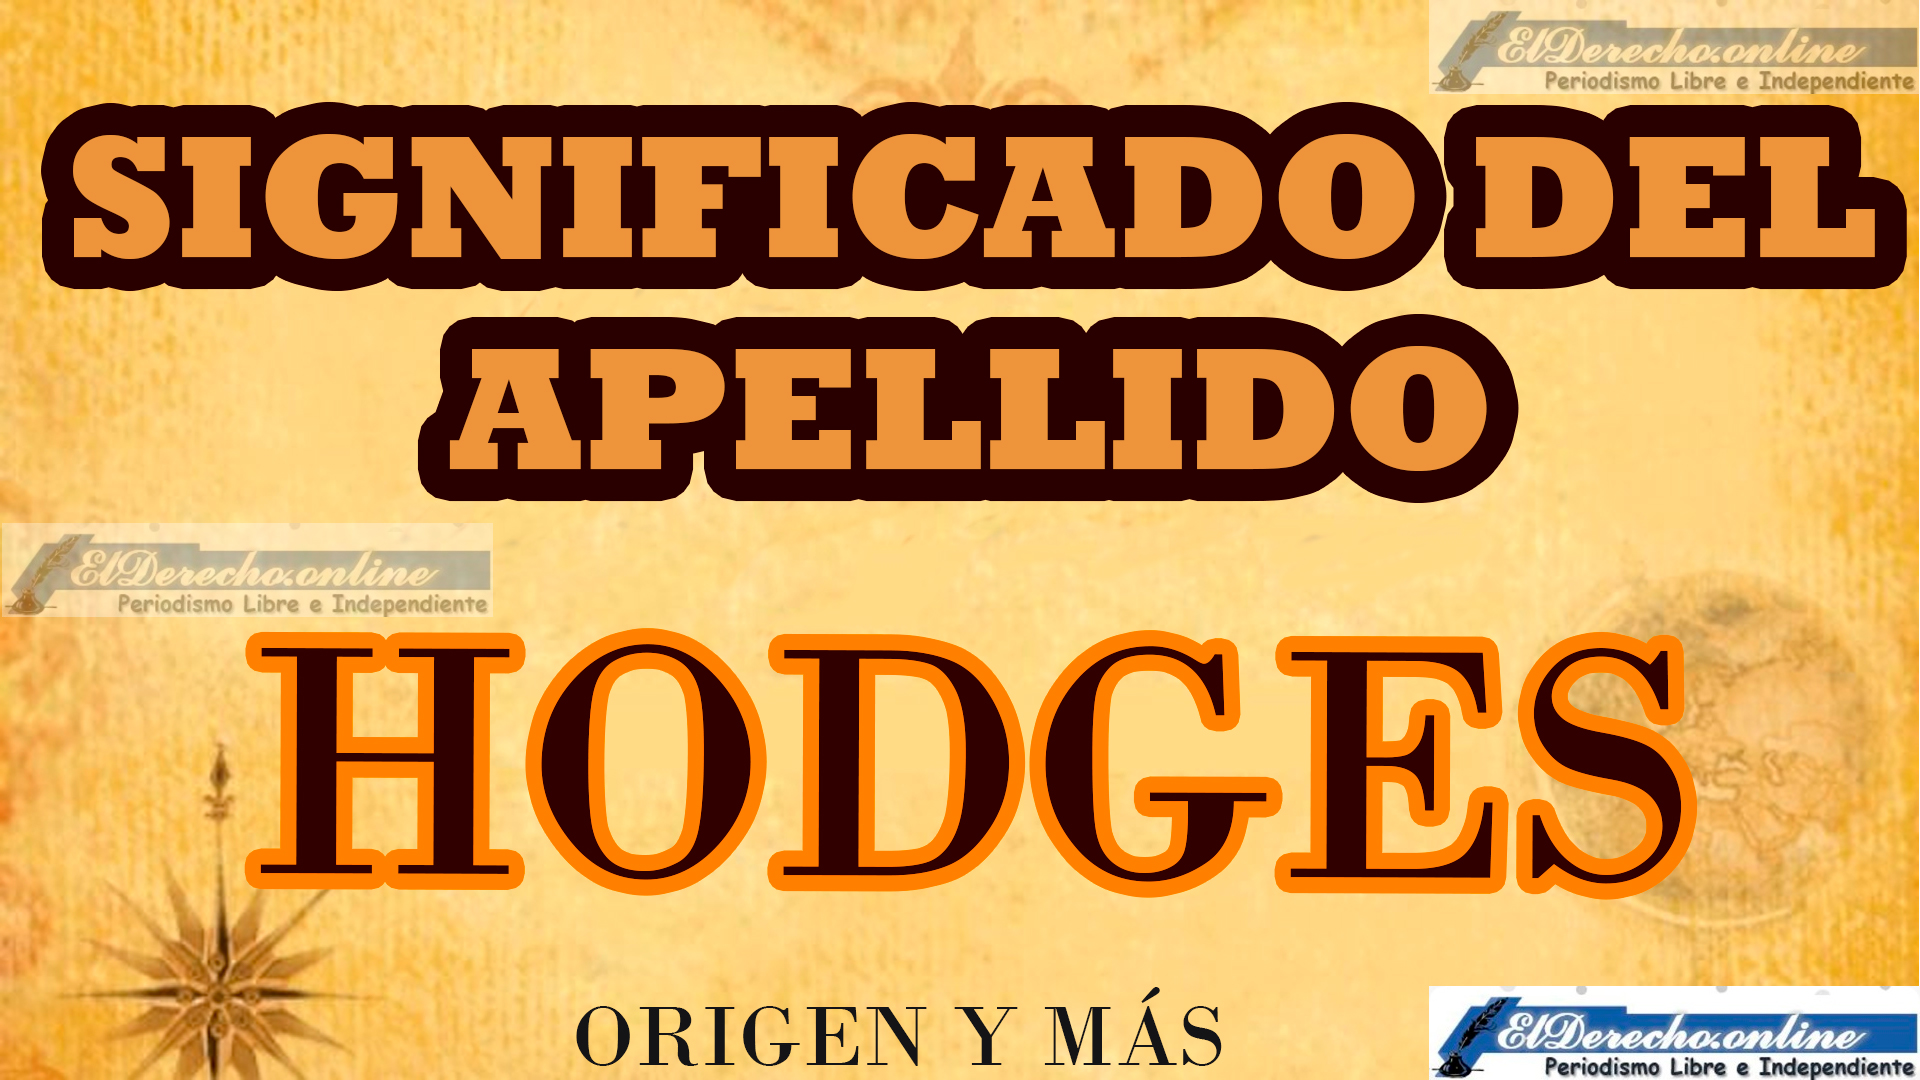 Significado del apellido Hodges, Origen y más